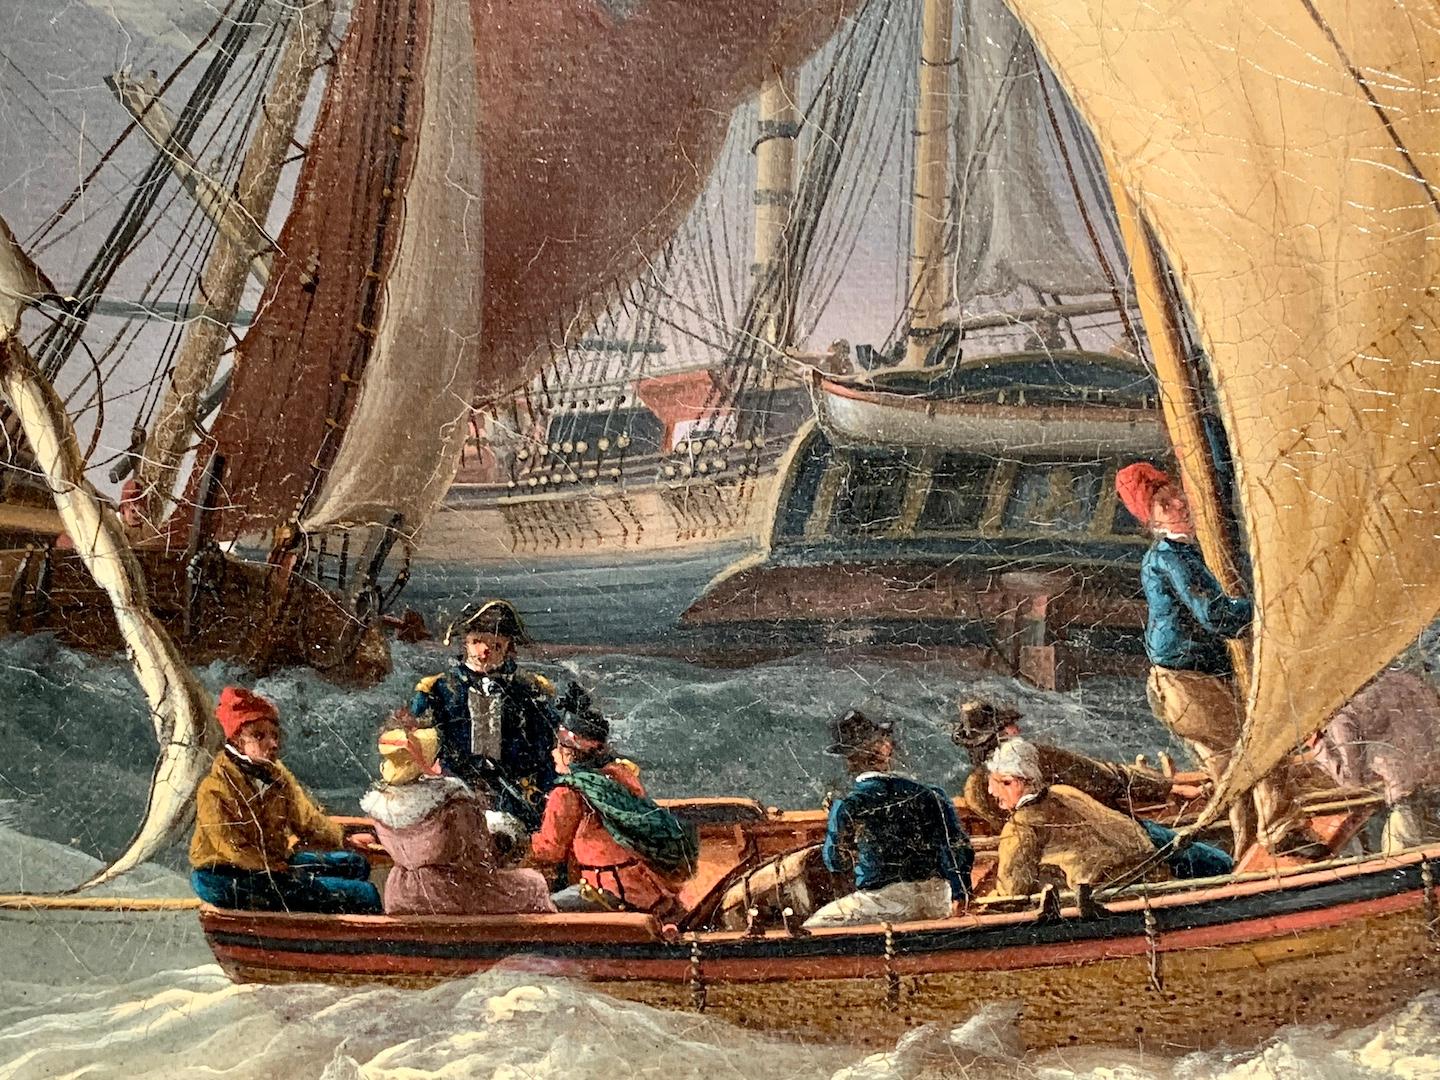 Wird Robert Salmon zugeschrieben,

Amerikanische, holländische und englische Schifffahrtsszene des 19. Jahrhunderts vor einer Stadtküste, möglicherweise Leigh Harbor, Schottland

Robert Salmon war einer der besten Marinemaler des späten 18. und